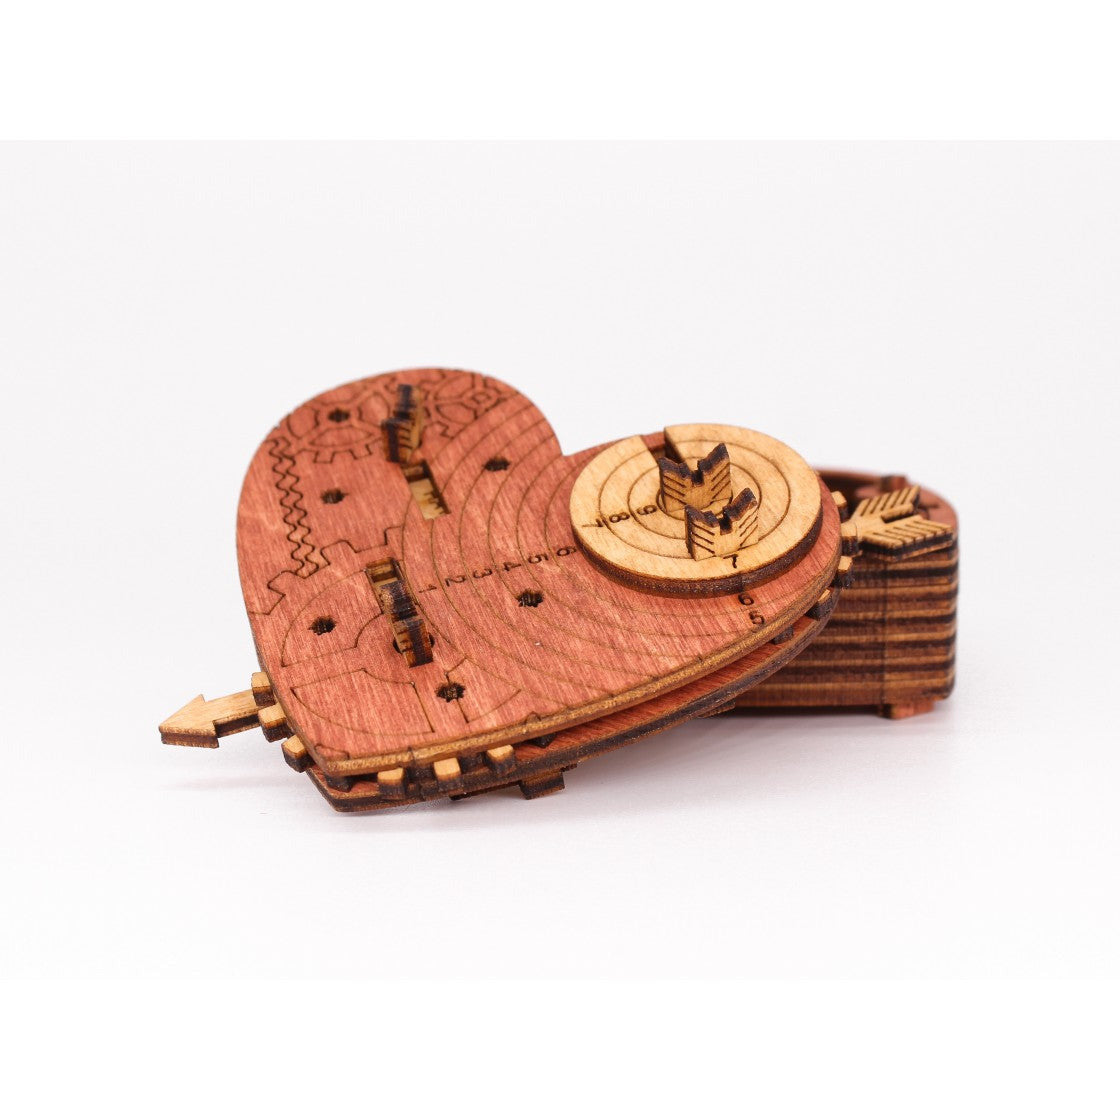 Cluebox | Eine mechanische Schatzkiste mit Codeschloss | Tin Woodman`s Heart